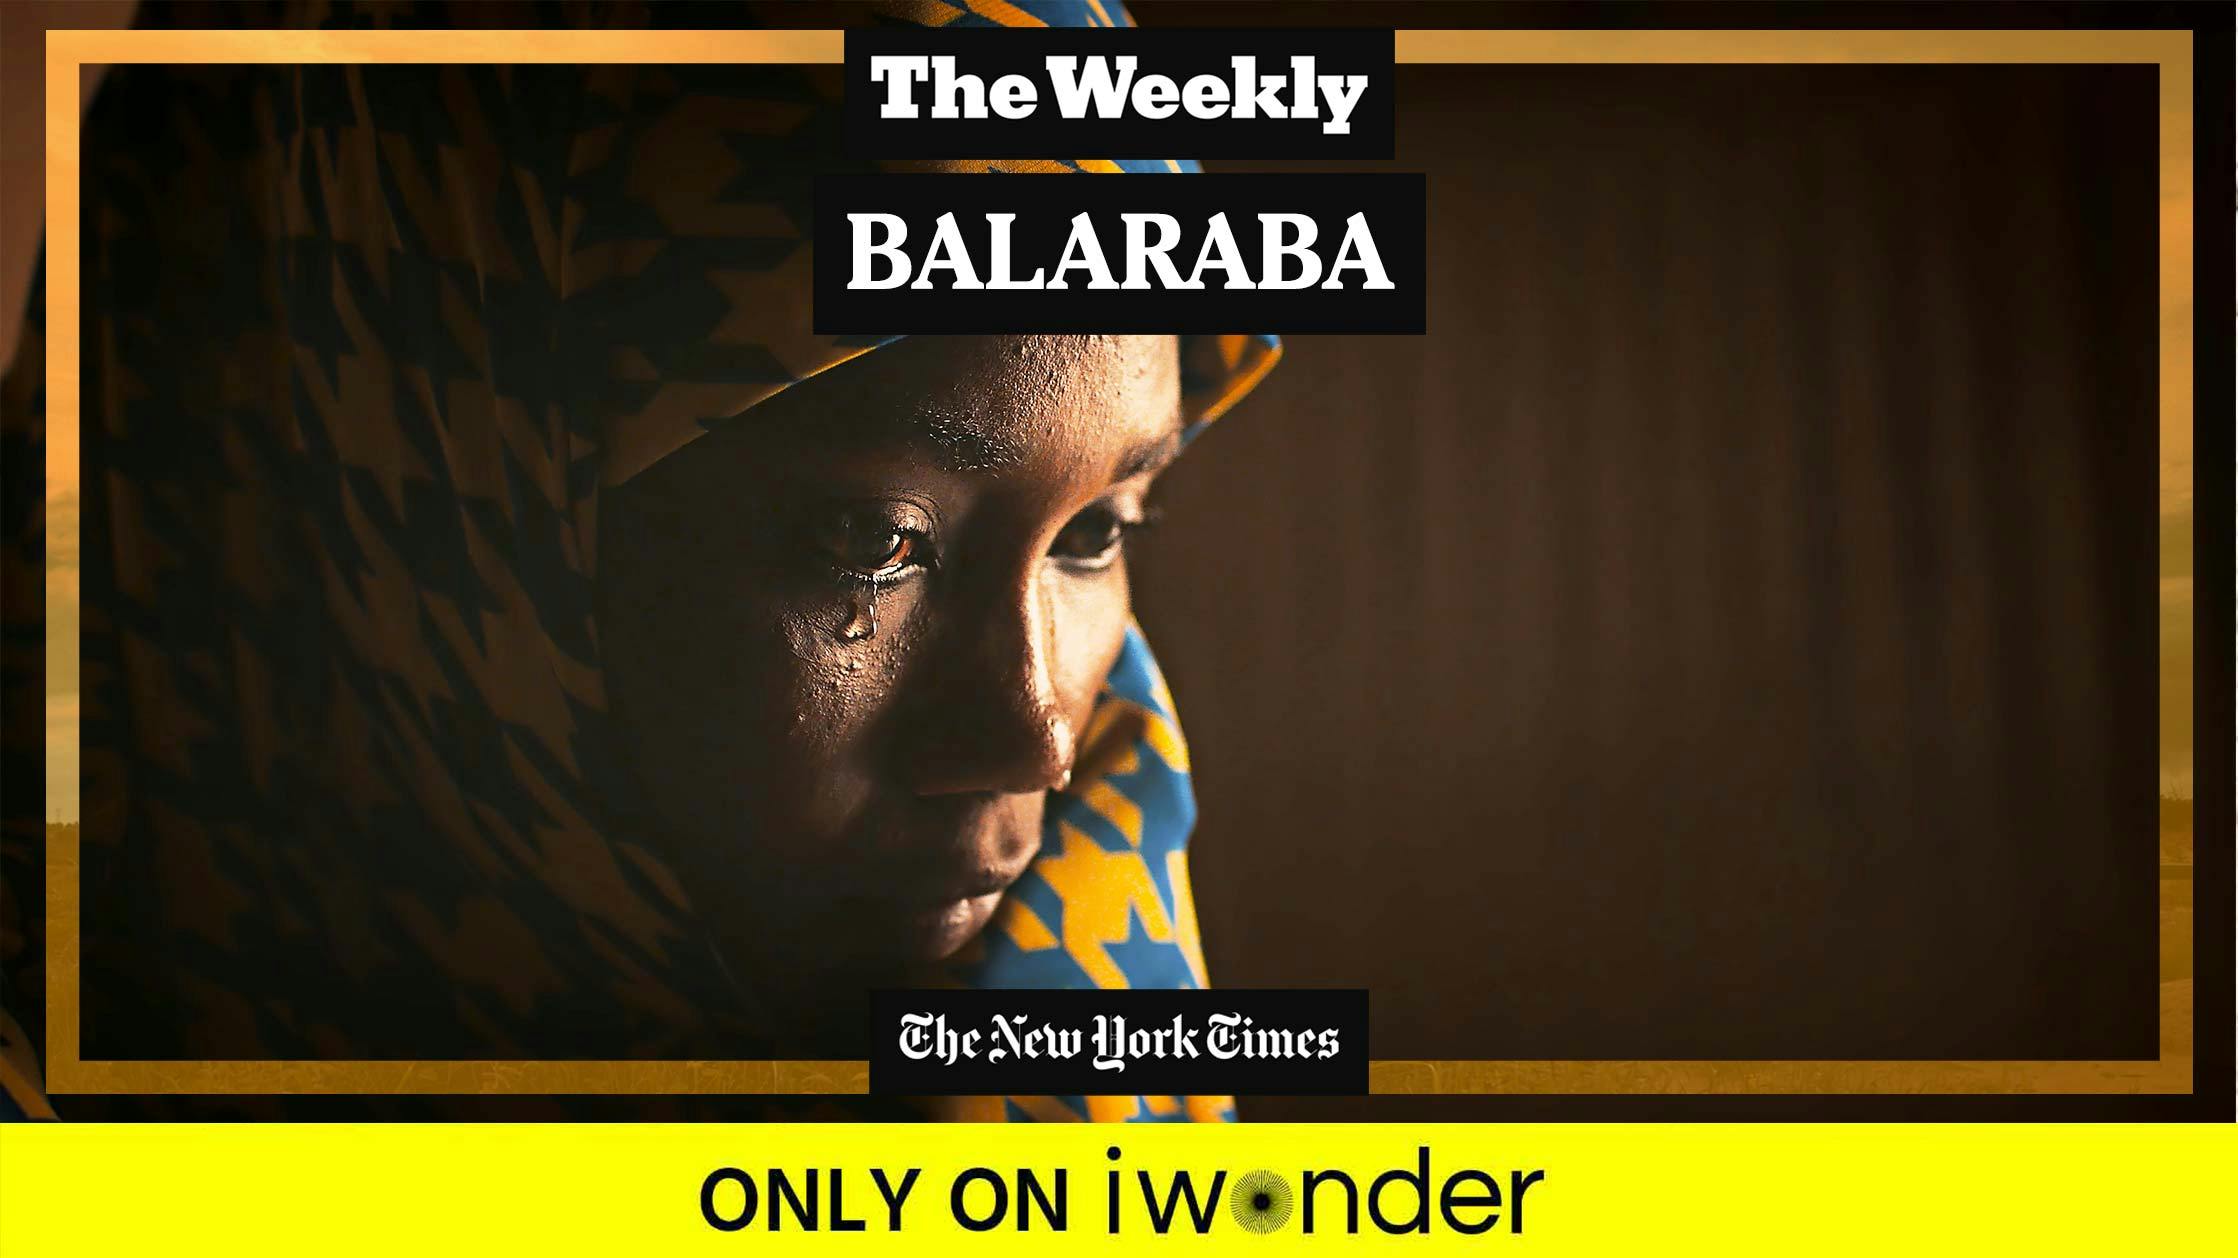 The Weekly: Balaraba